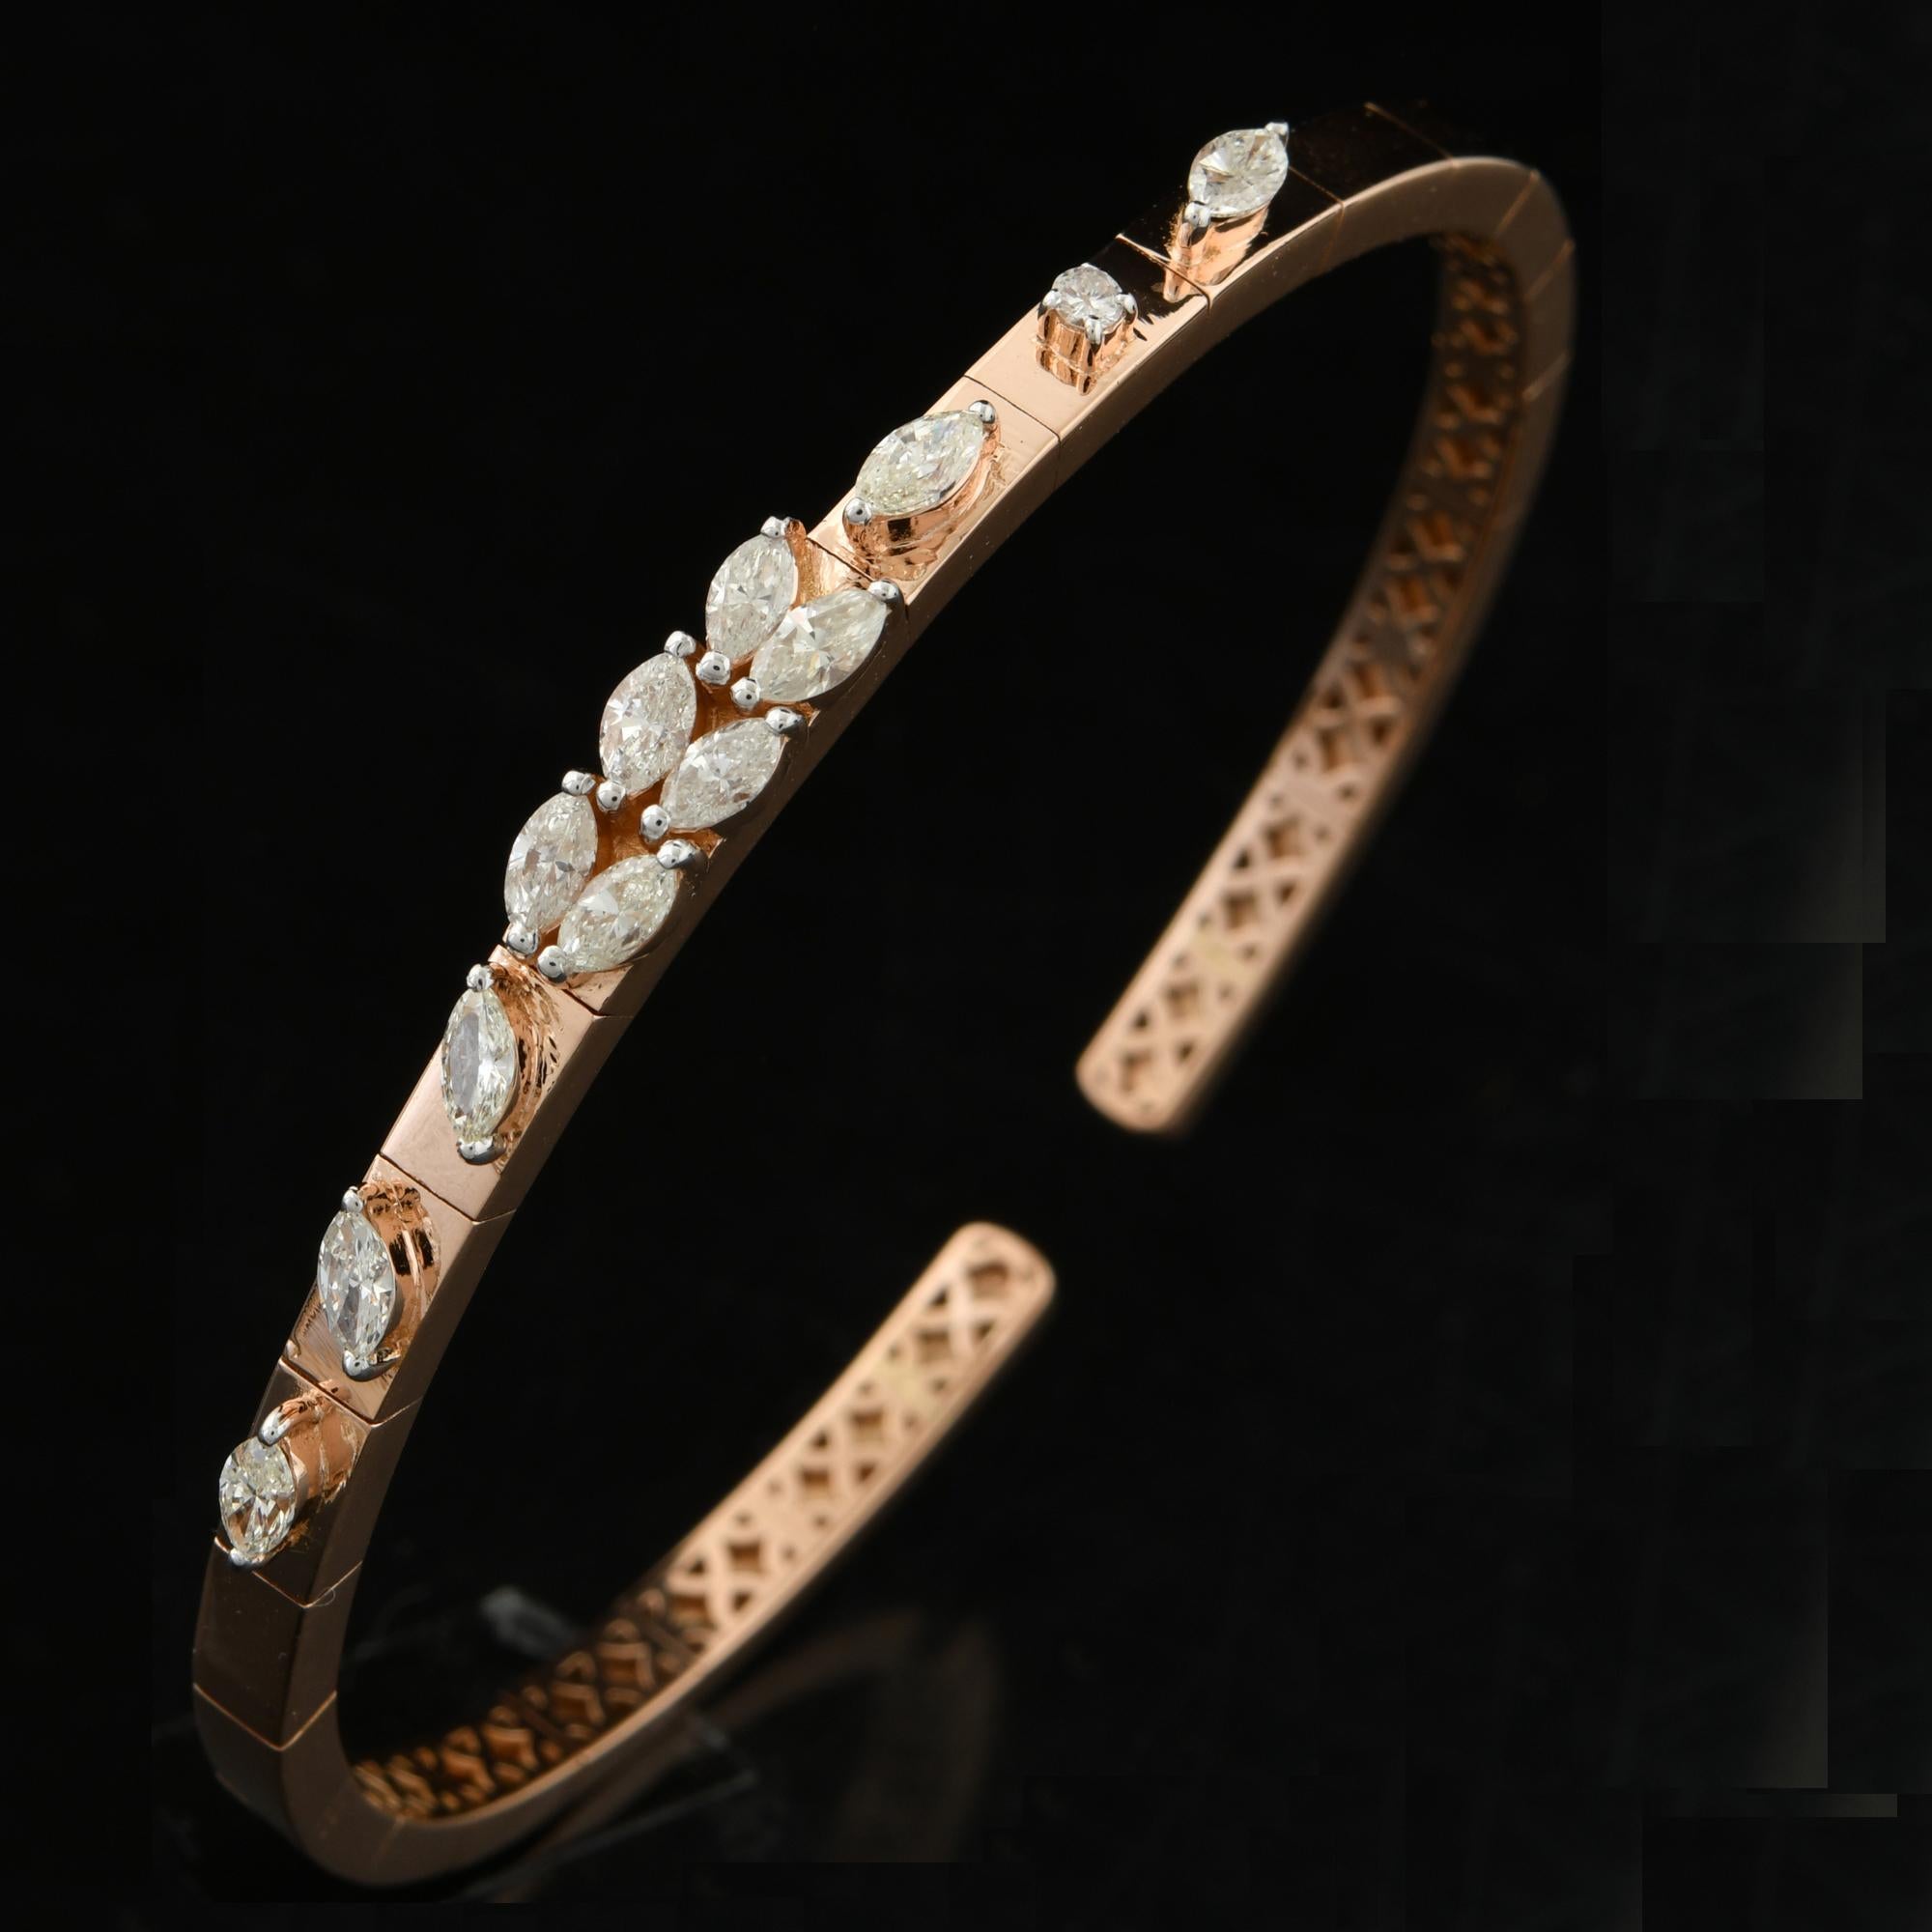 Le bracelet présente un design élégant et moderne, avec un bracelet de style manchette qui s'enroule gracieusement autour du poignet. Le bracelet est réalisé en or jaune 18 carats de haute qualité, réputé pour sa teinte riche et chaude. L'or a été